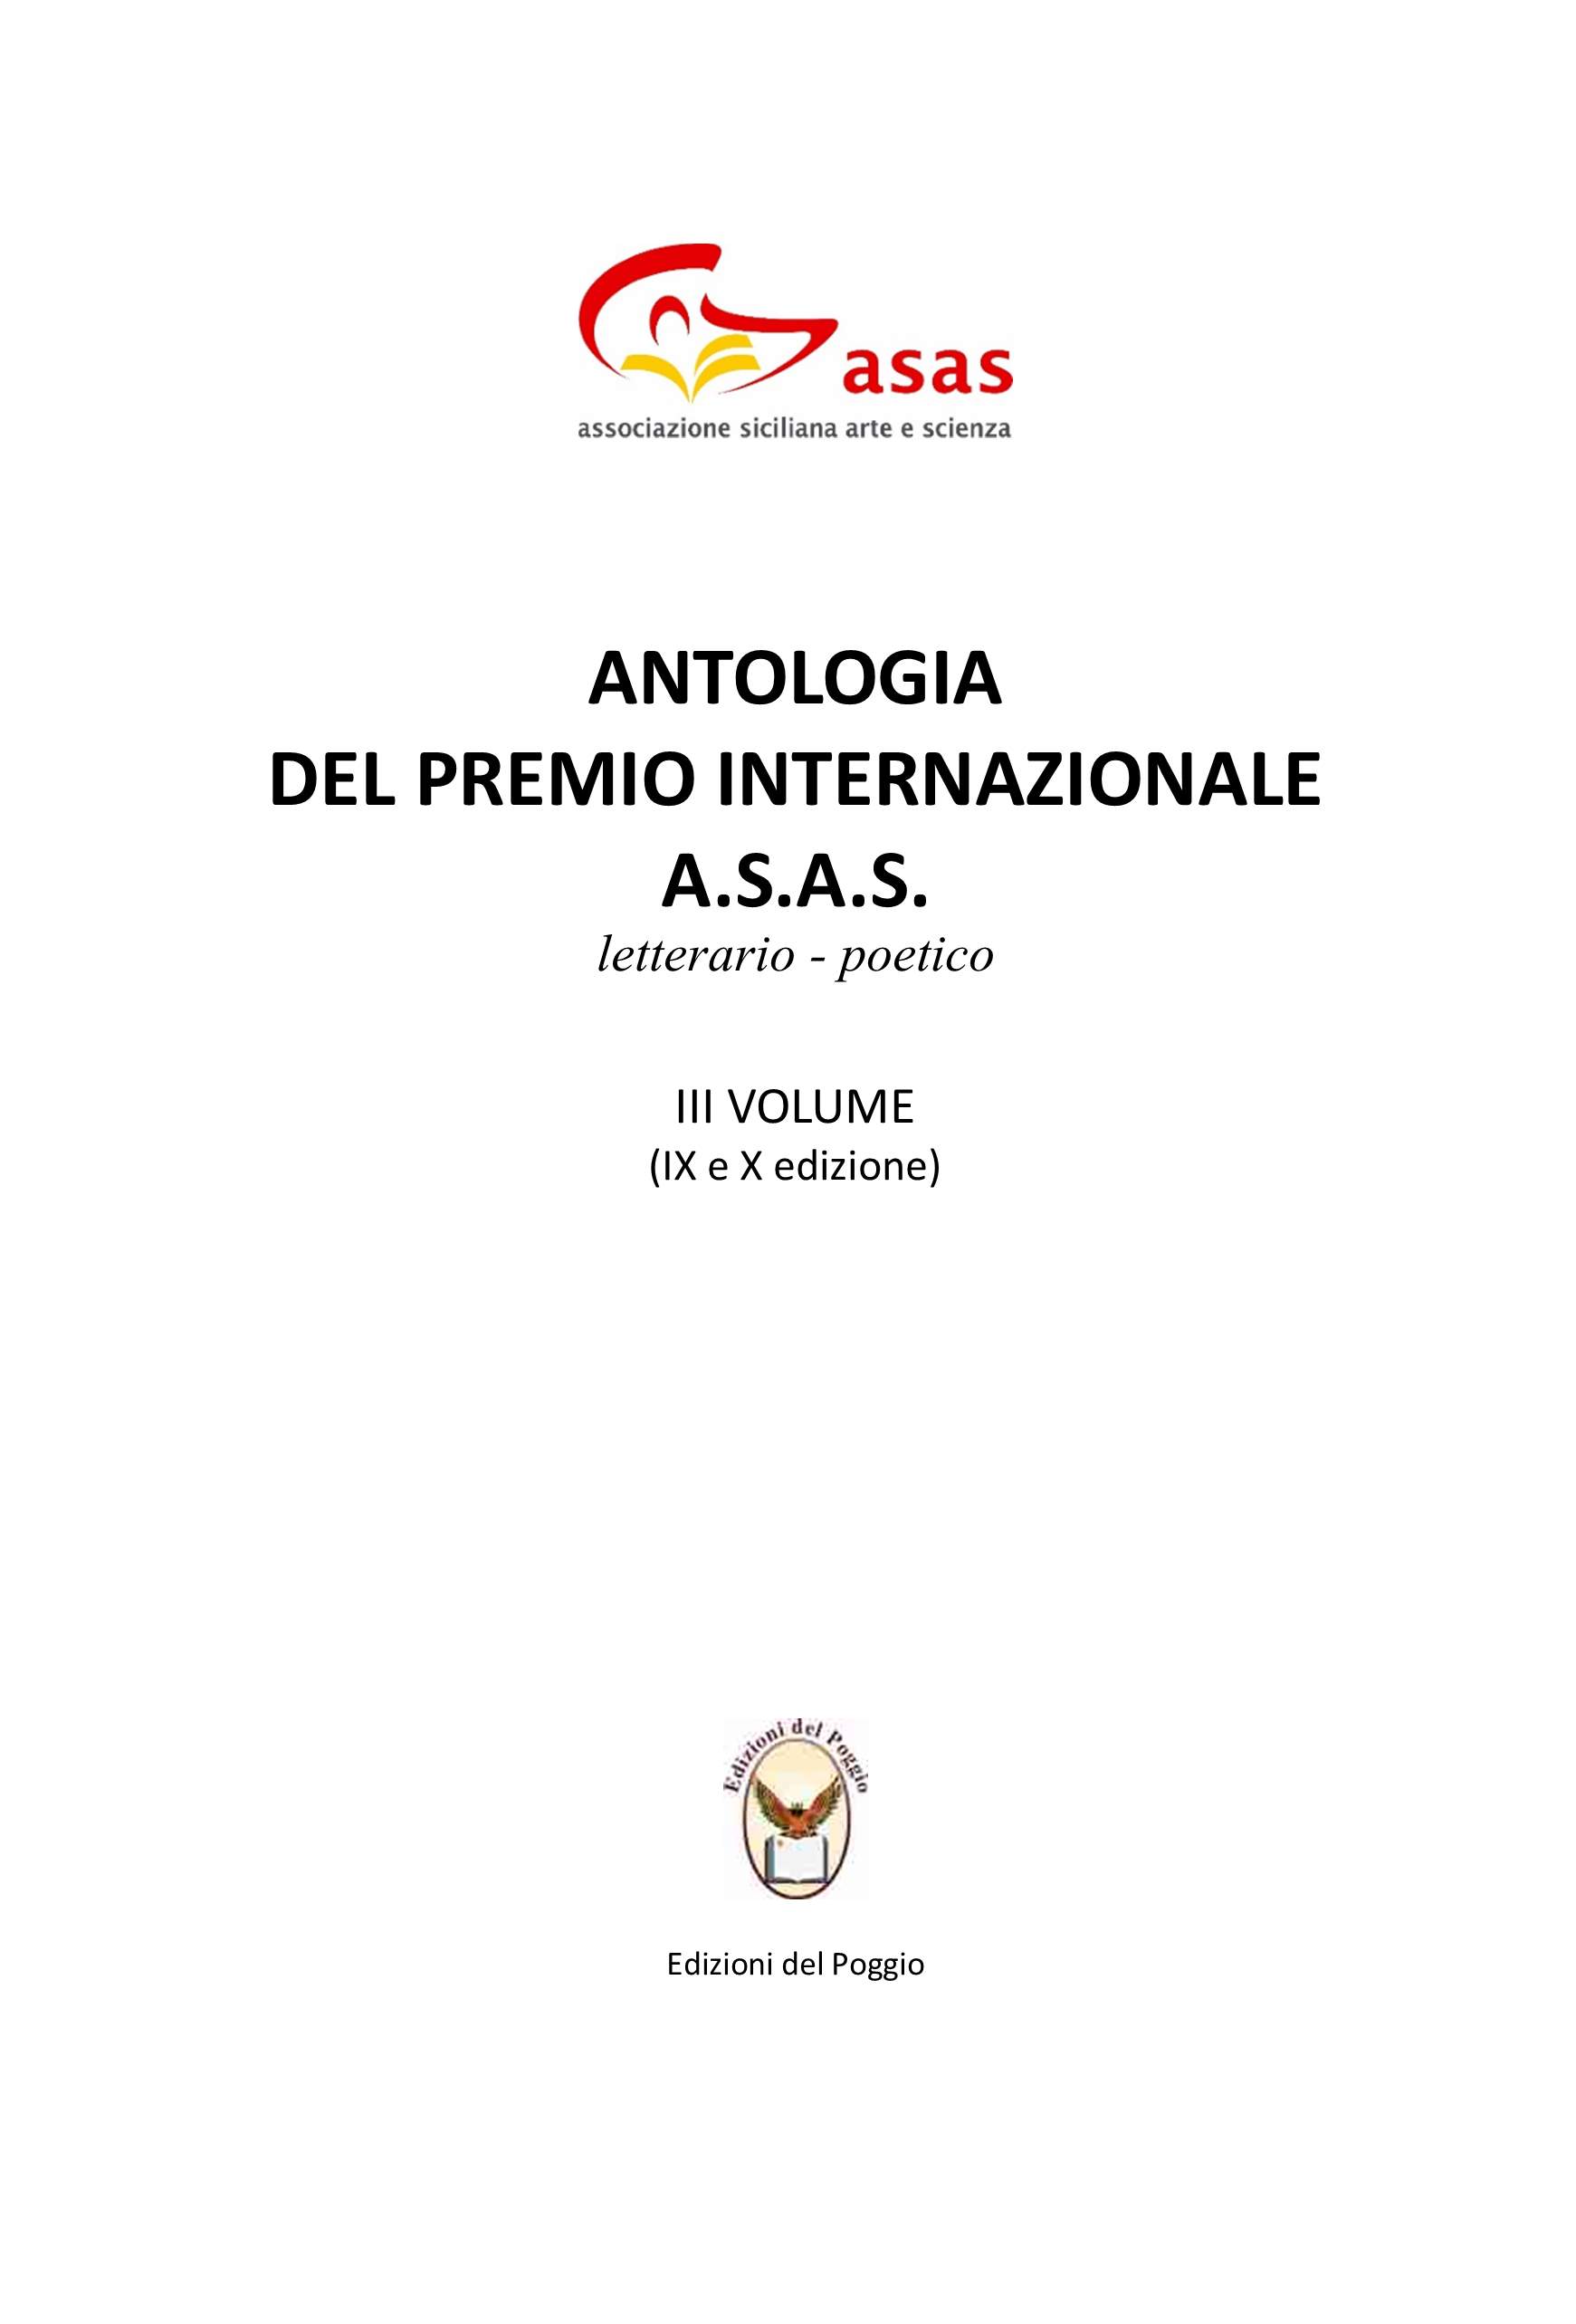 Antologia del Premio Internazionale A.S.A.S. 2022